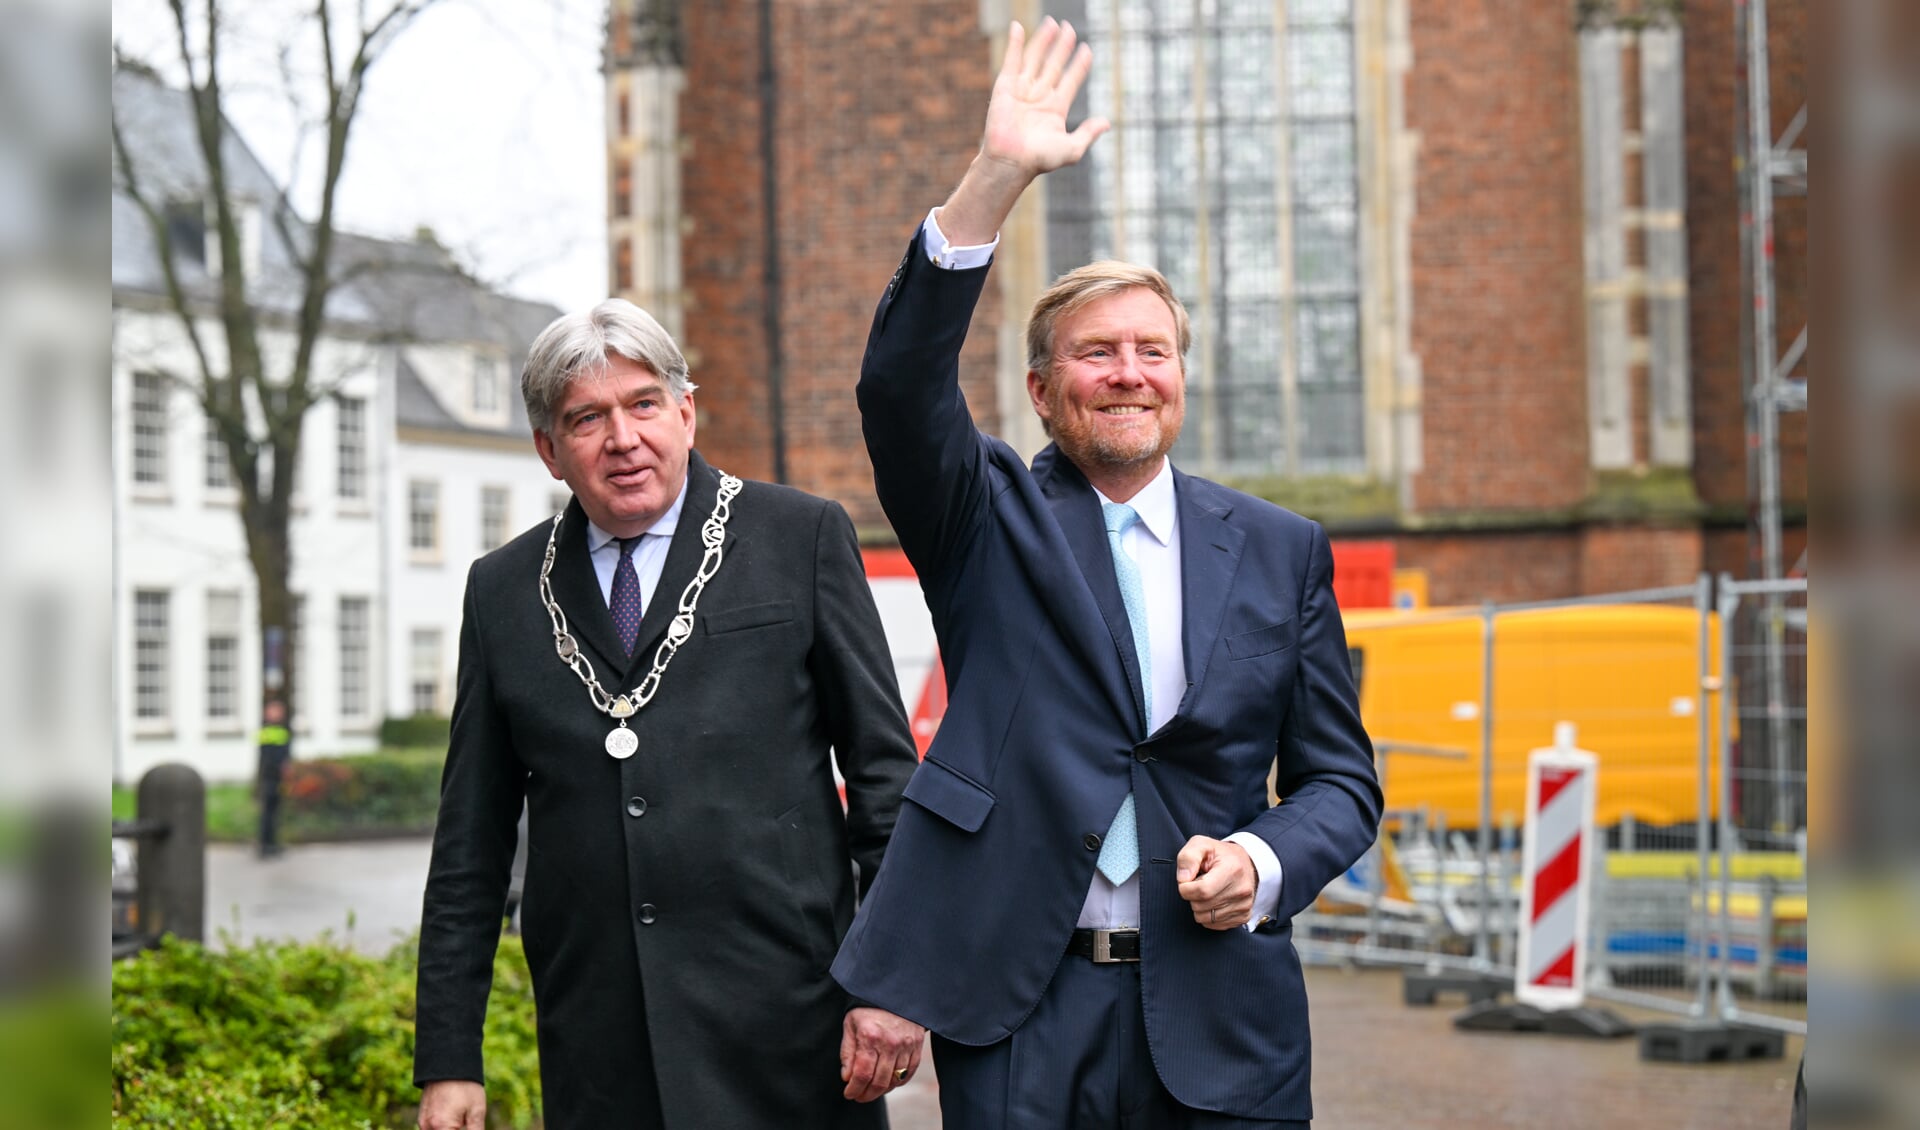 Koning Willem-Alexander arriveerde dinsdagmorgen in Zutphen. Burgemeester Wimar Jaeger heette hem welkom. Foto: Frank Mossink